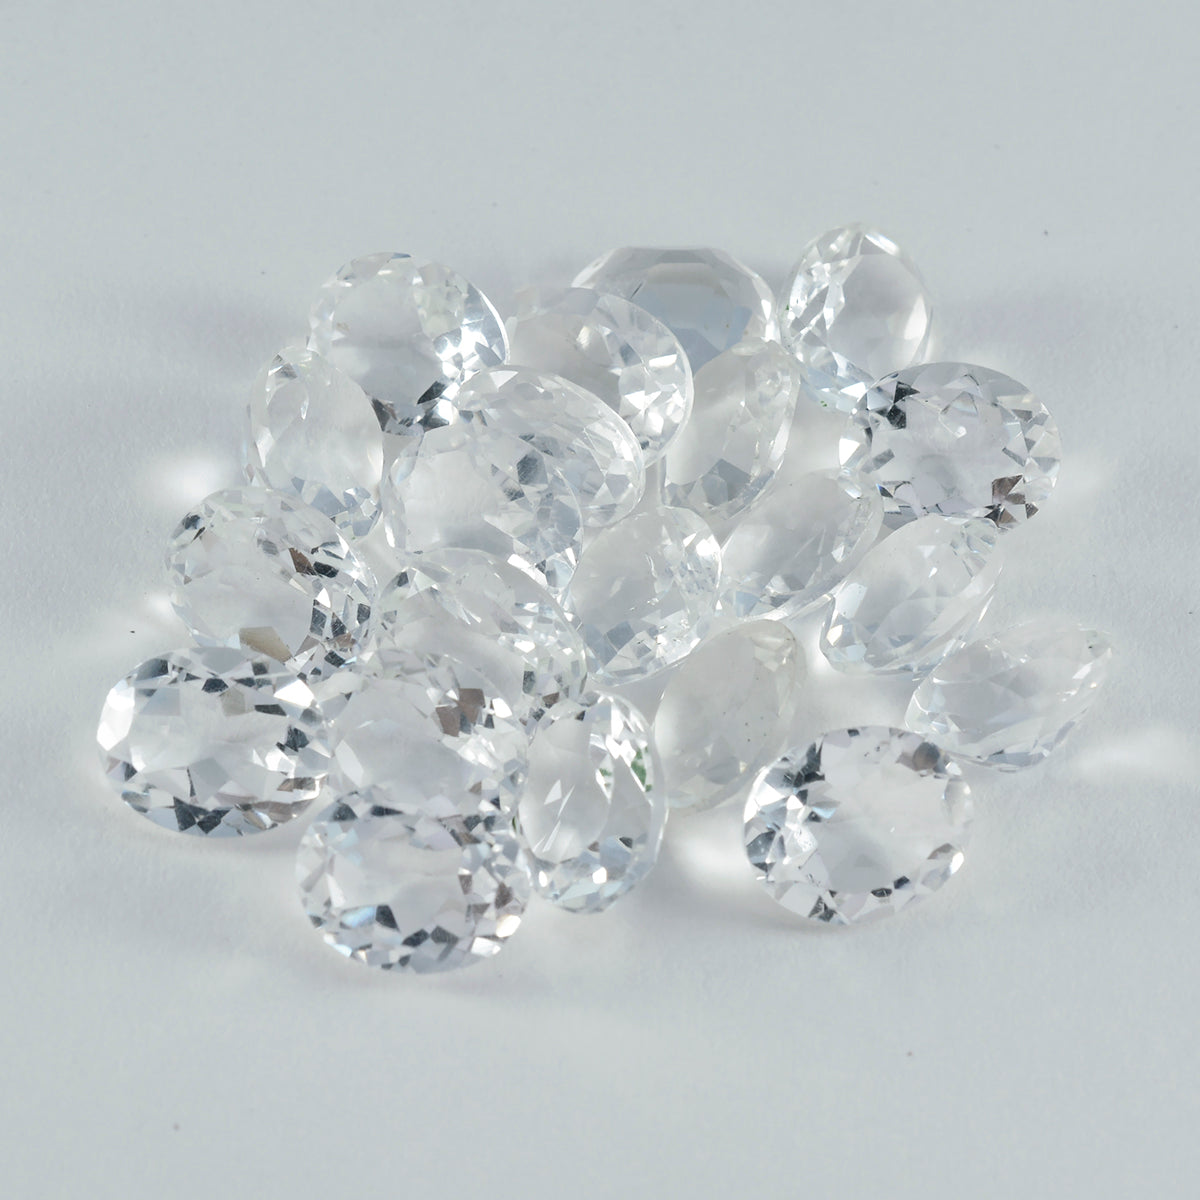 riyogems 1 шт., белые кристаллы кварца, граненые 6x8 мм, овальной формы, красивые качественные драгоценные камни